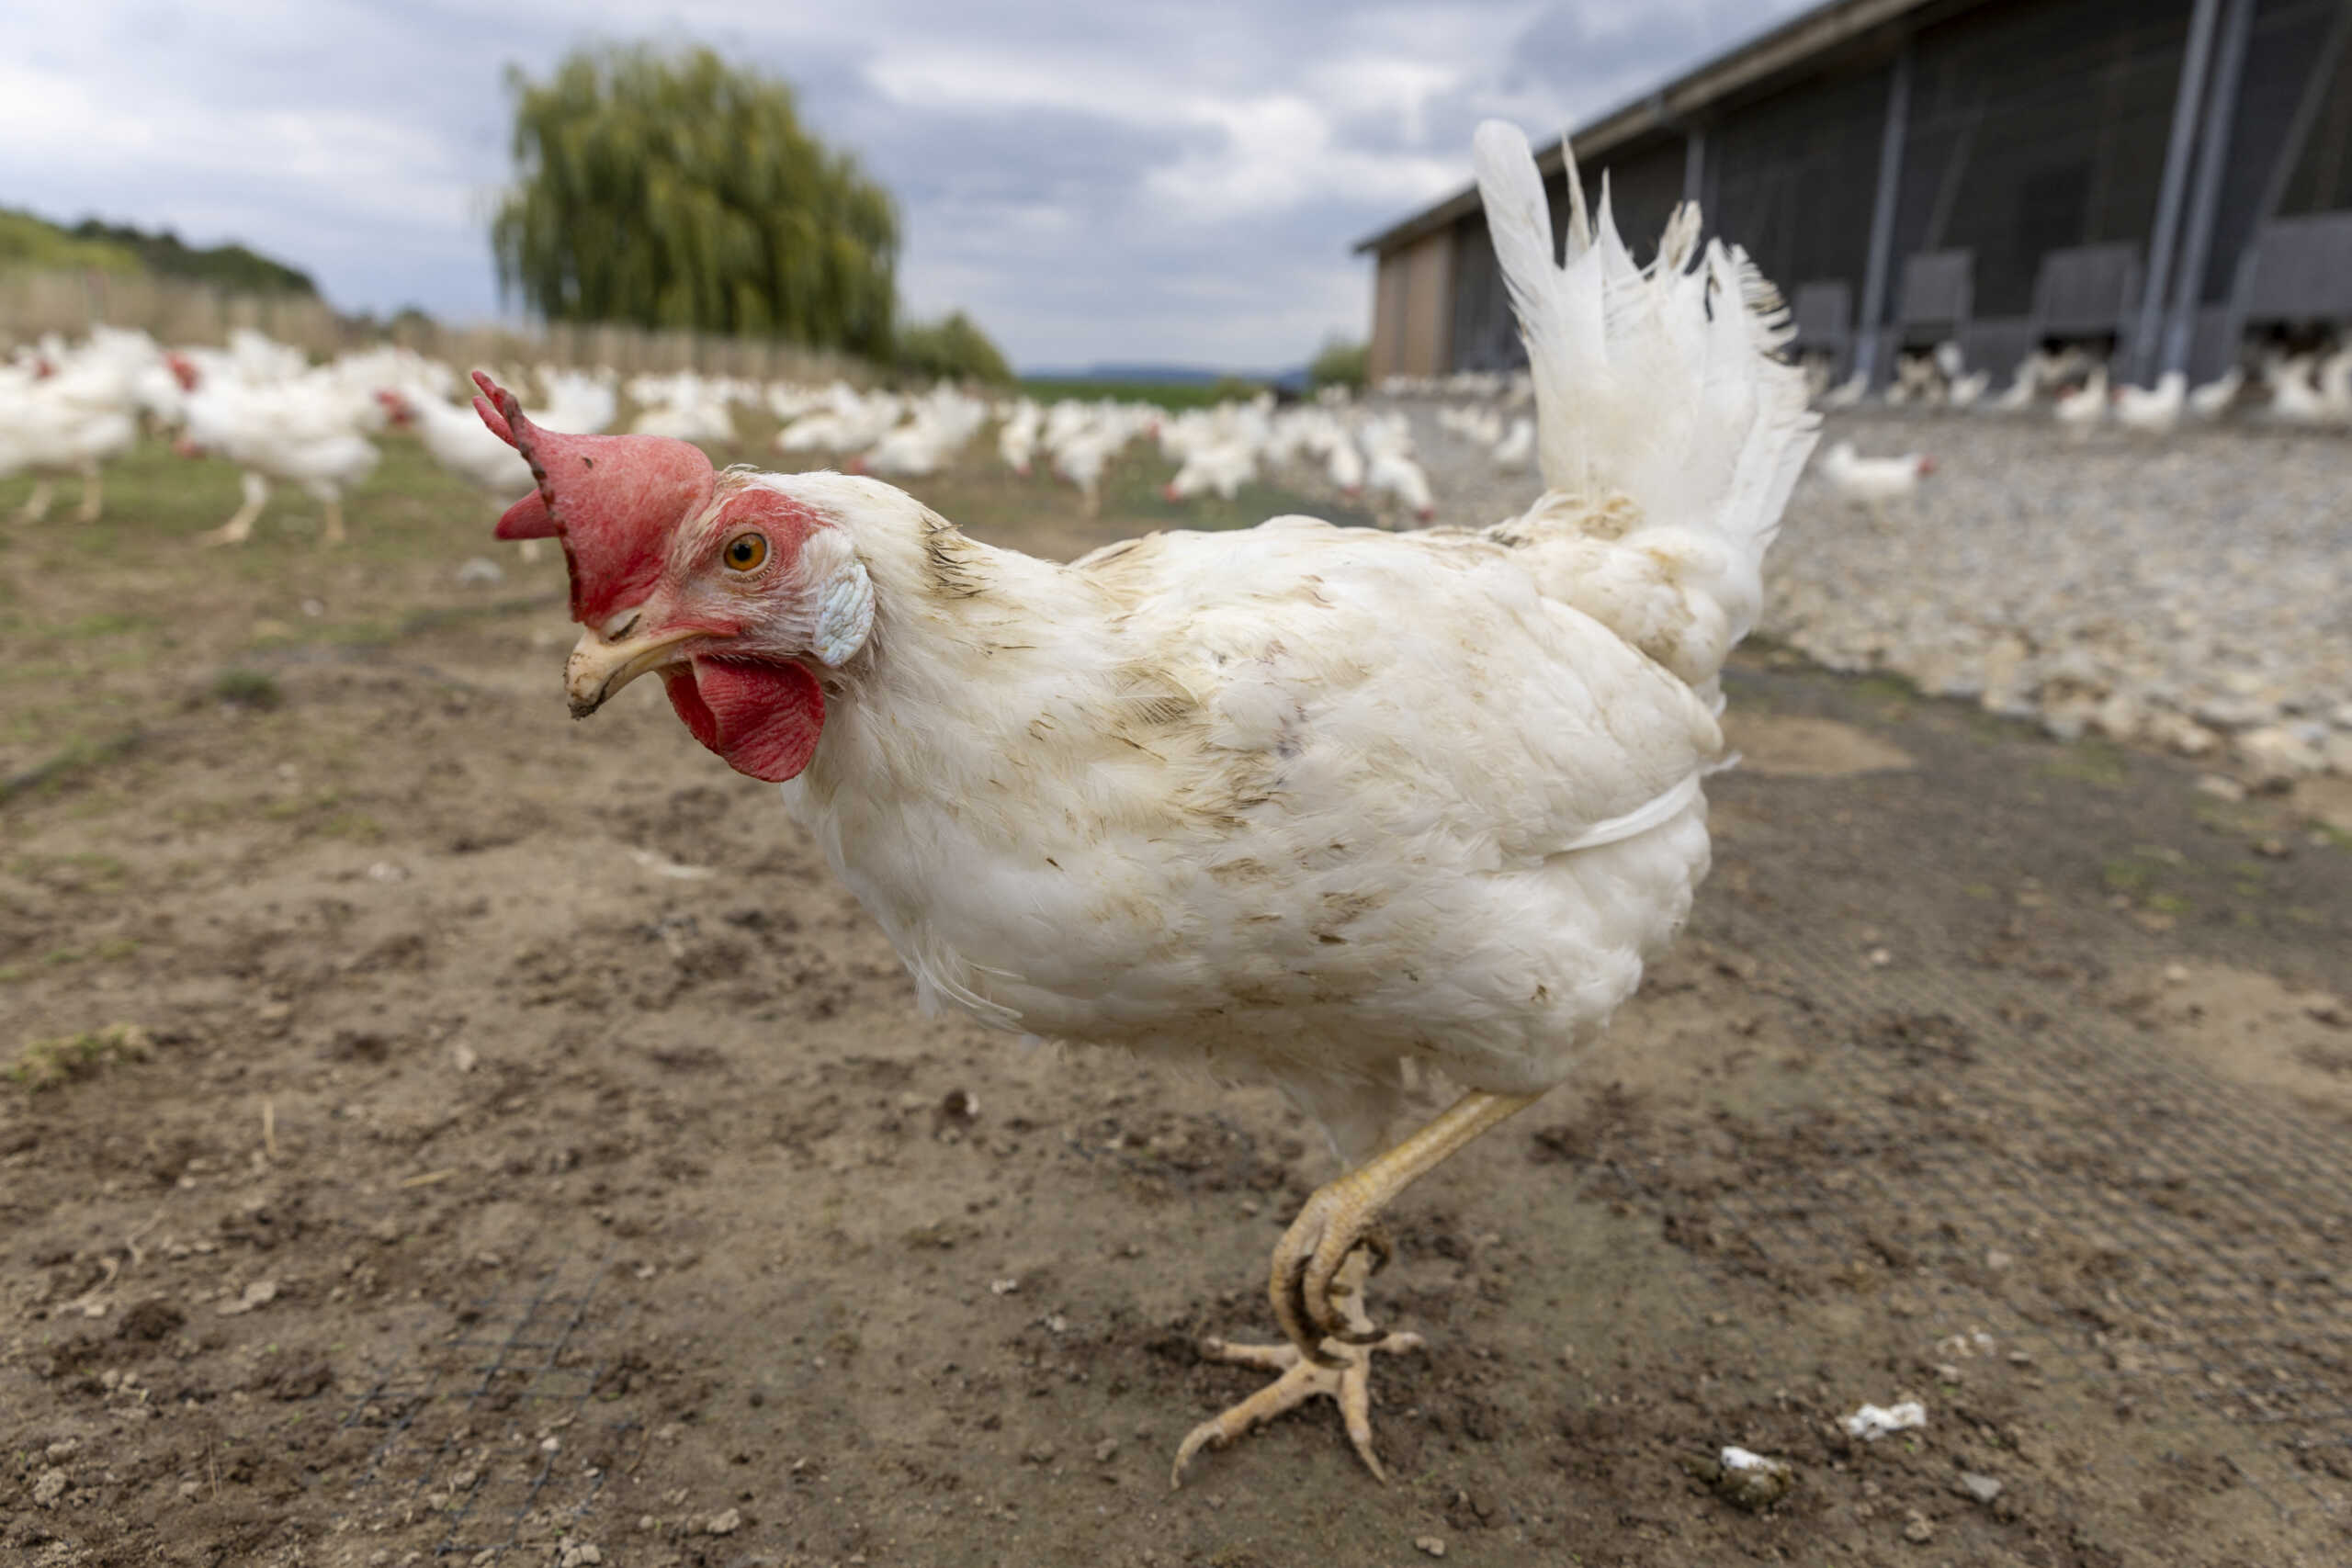 Η Ολλανδία θα σφάξει άλλα 300.000 πουλερικά λόγω της γρίπης των πτηνών